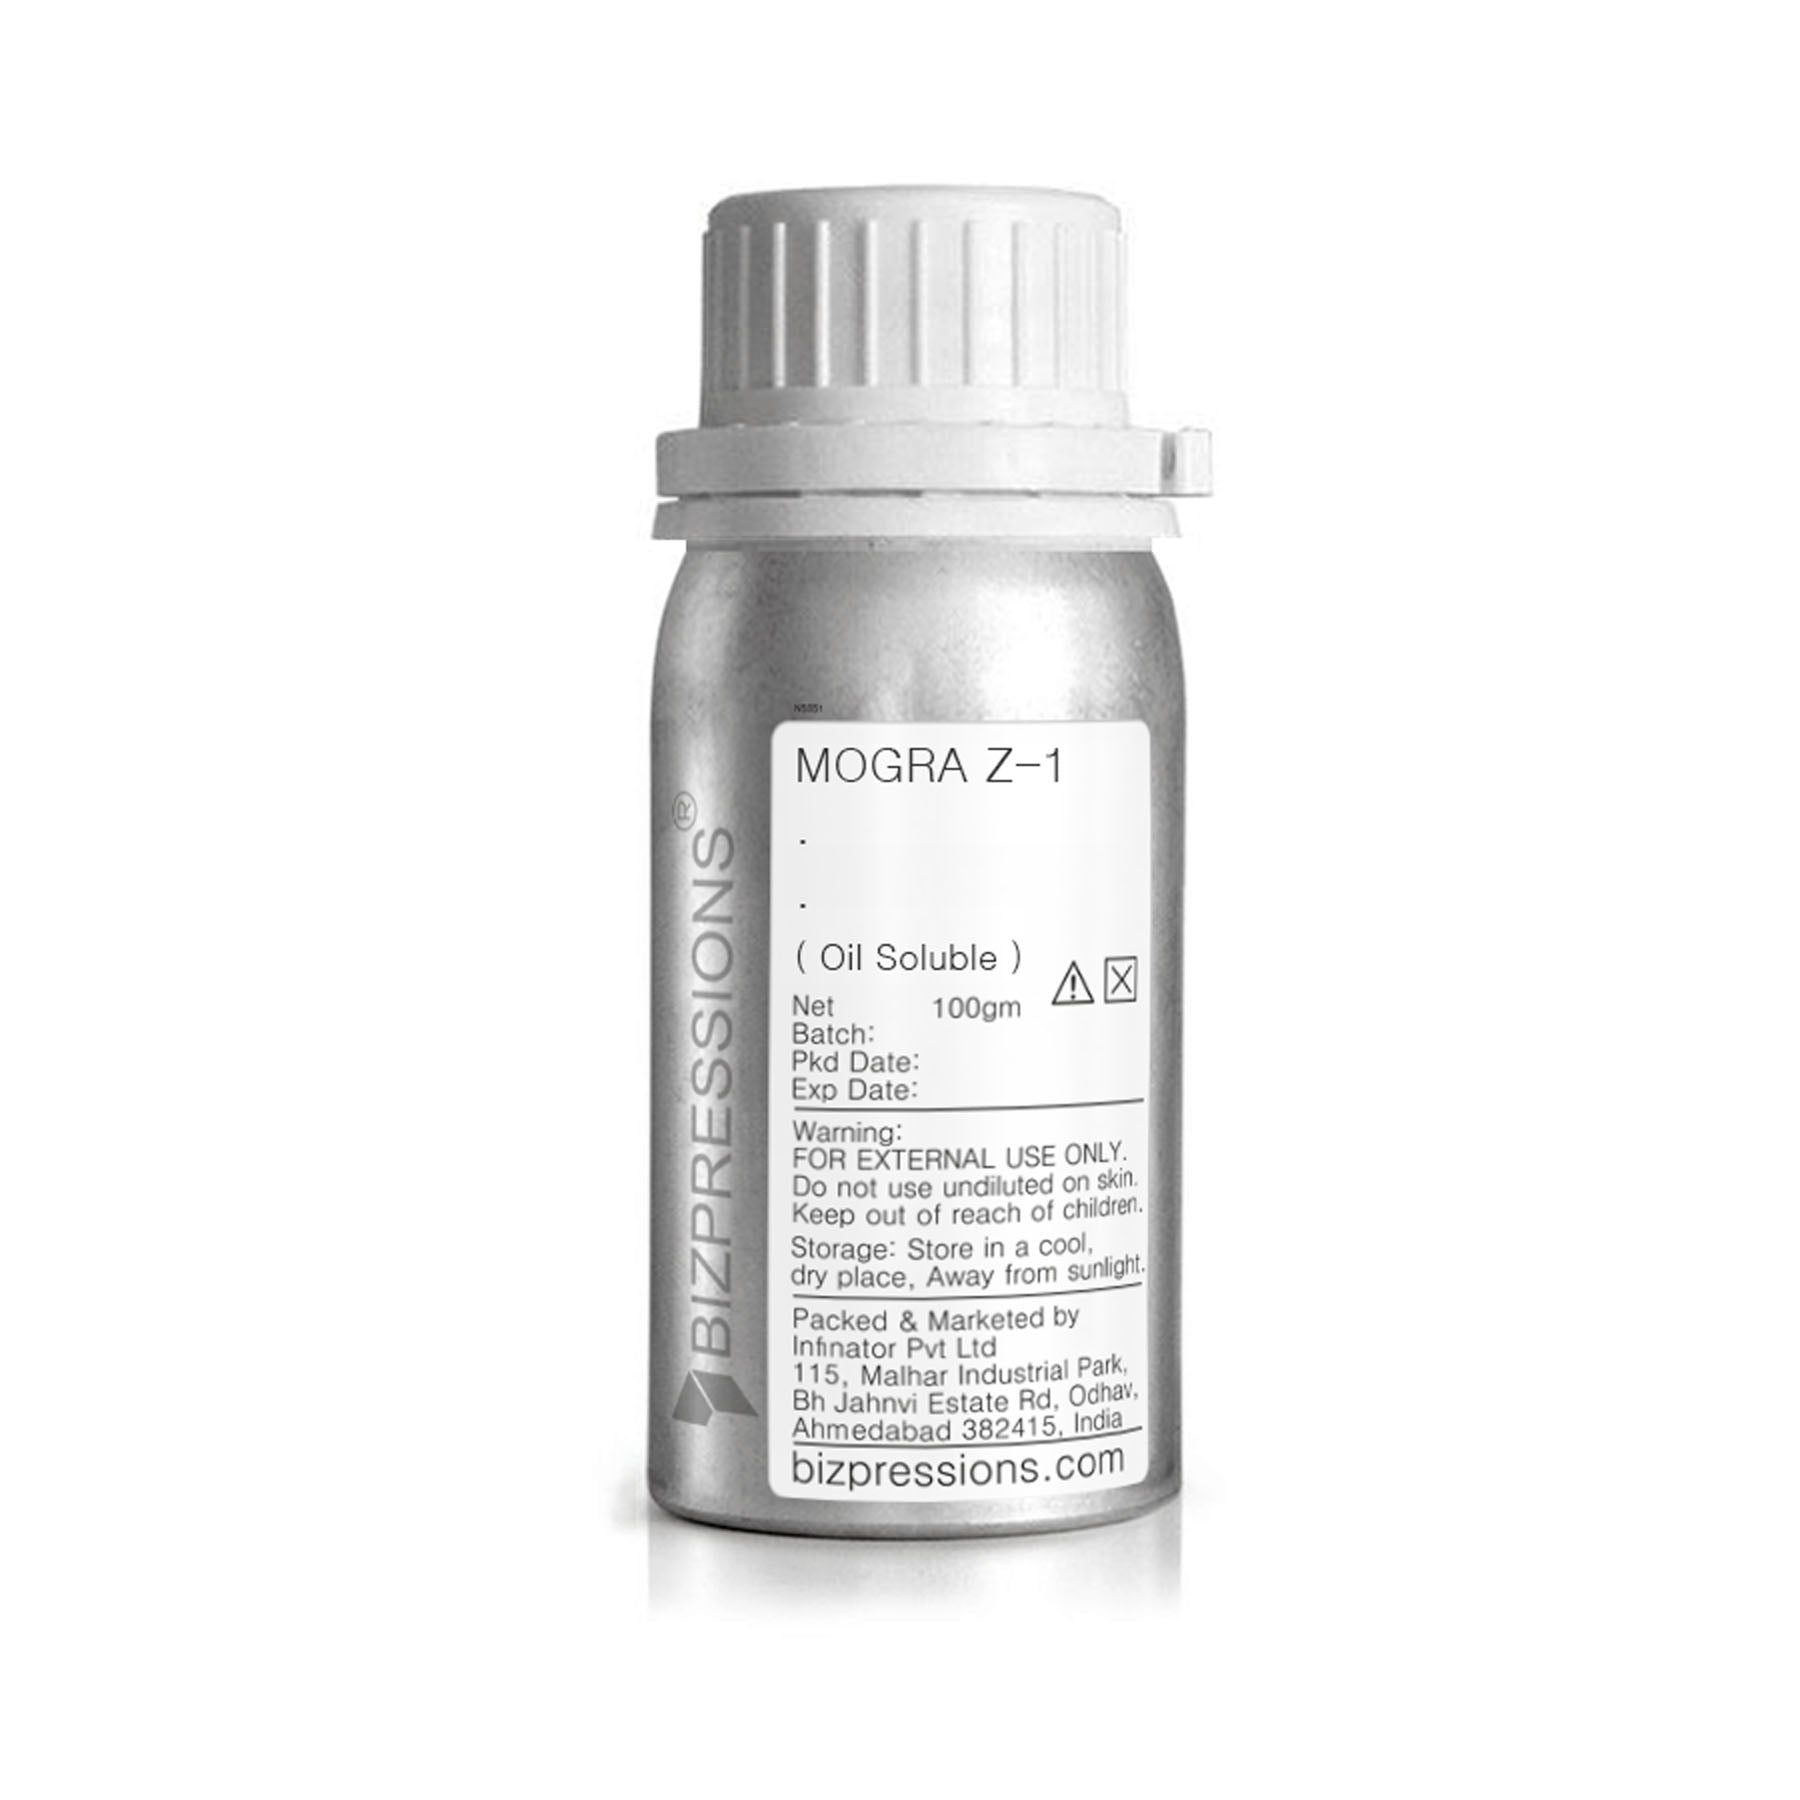 MOGRA Z-1 - Fragrance ( Oil Soluble ) - 100 gm